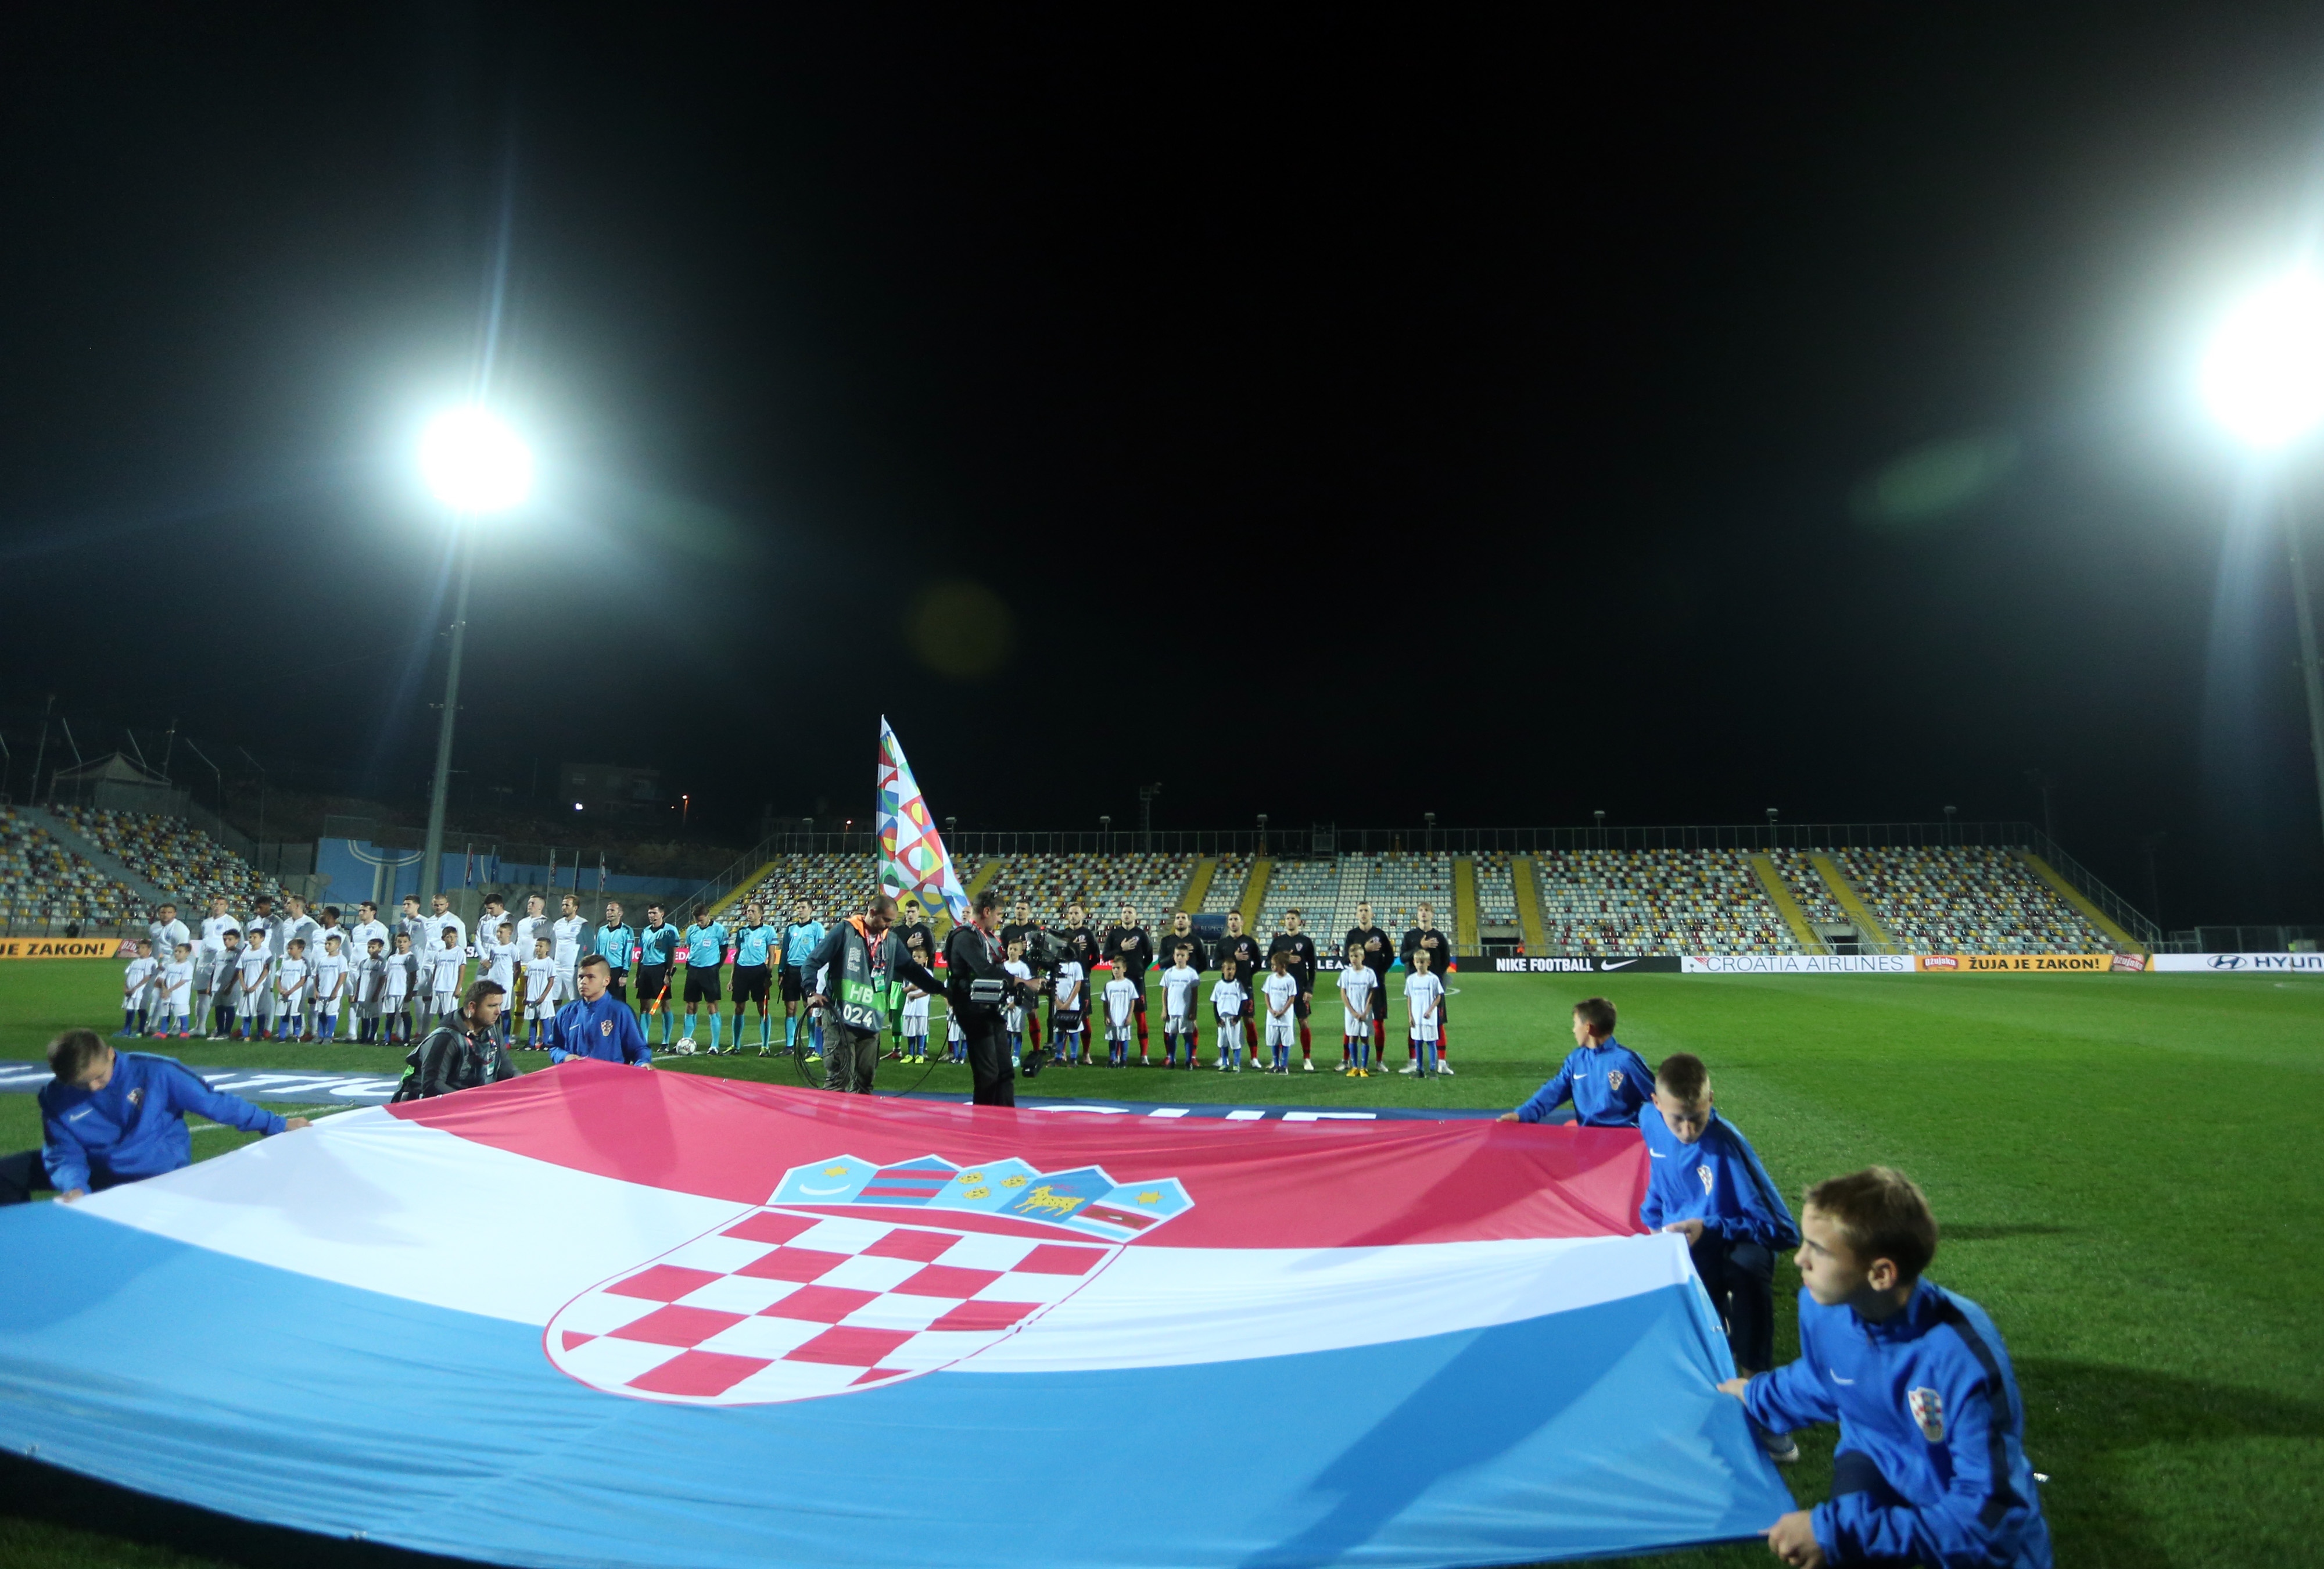 12.10.2018., Rujevica, Rijeka - Liga nacija, Hrvatska - Engleska. 
Photo: Luka Stanzl/PIXSELL